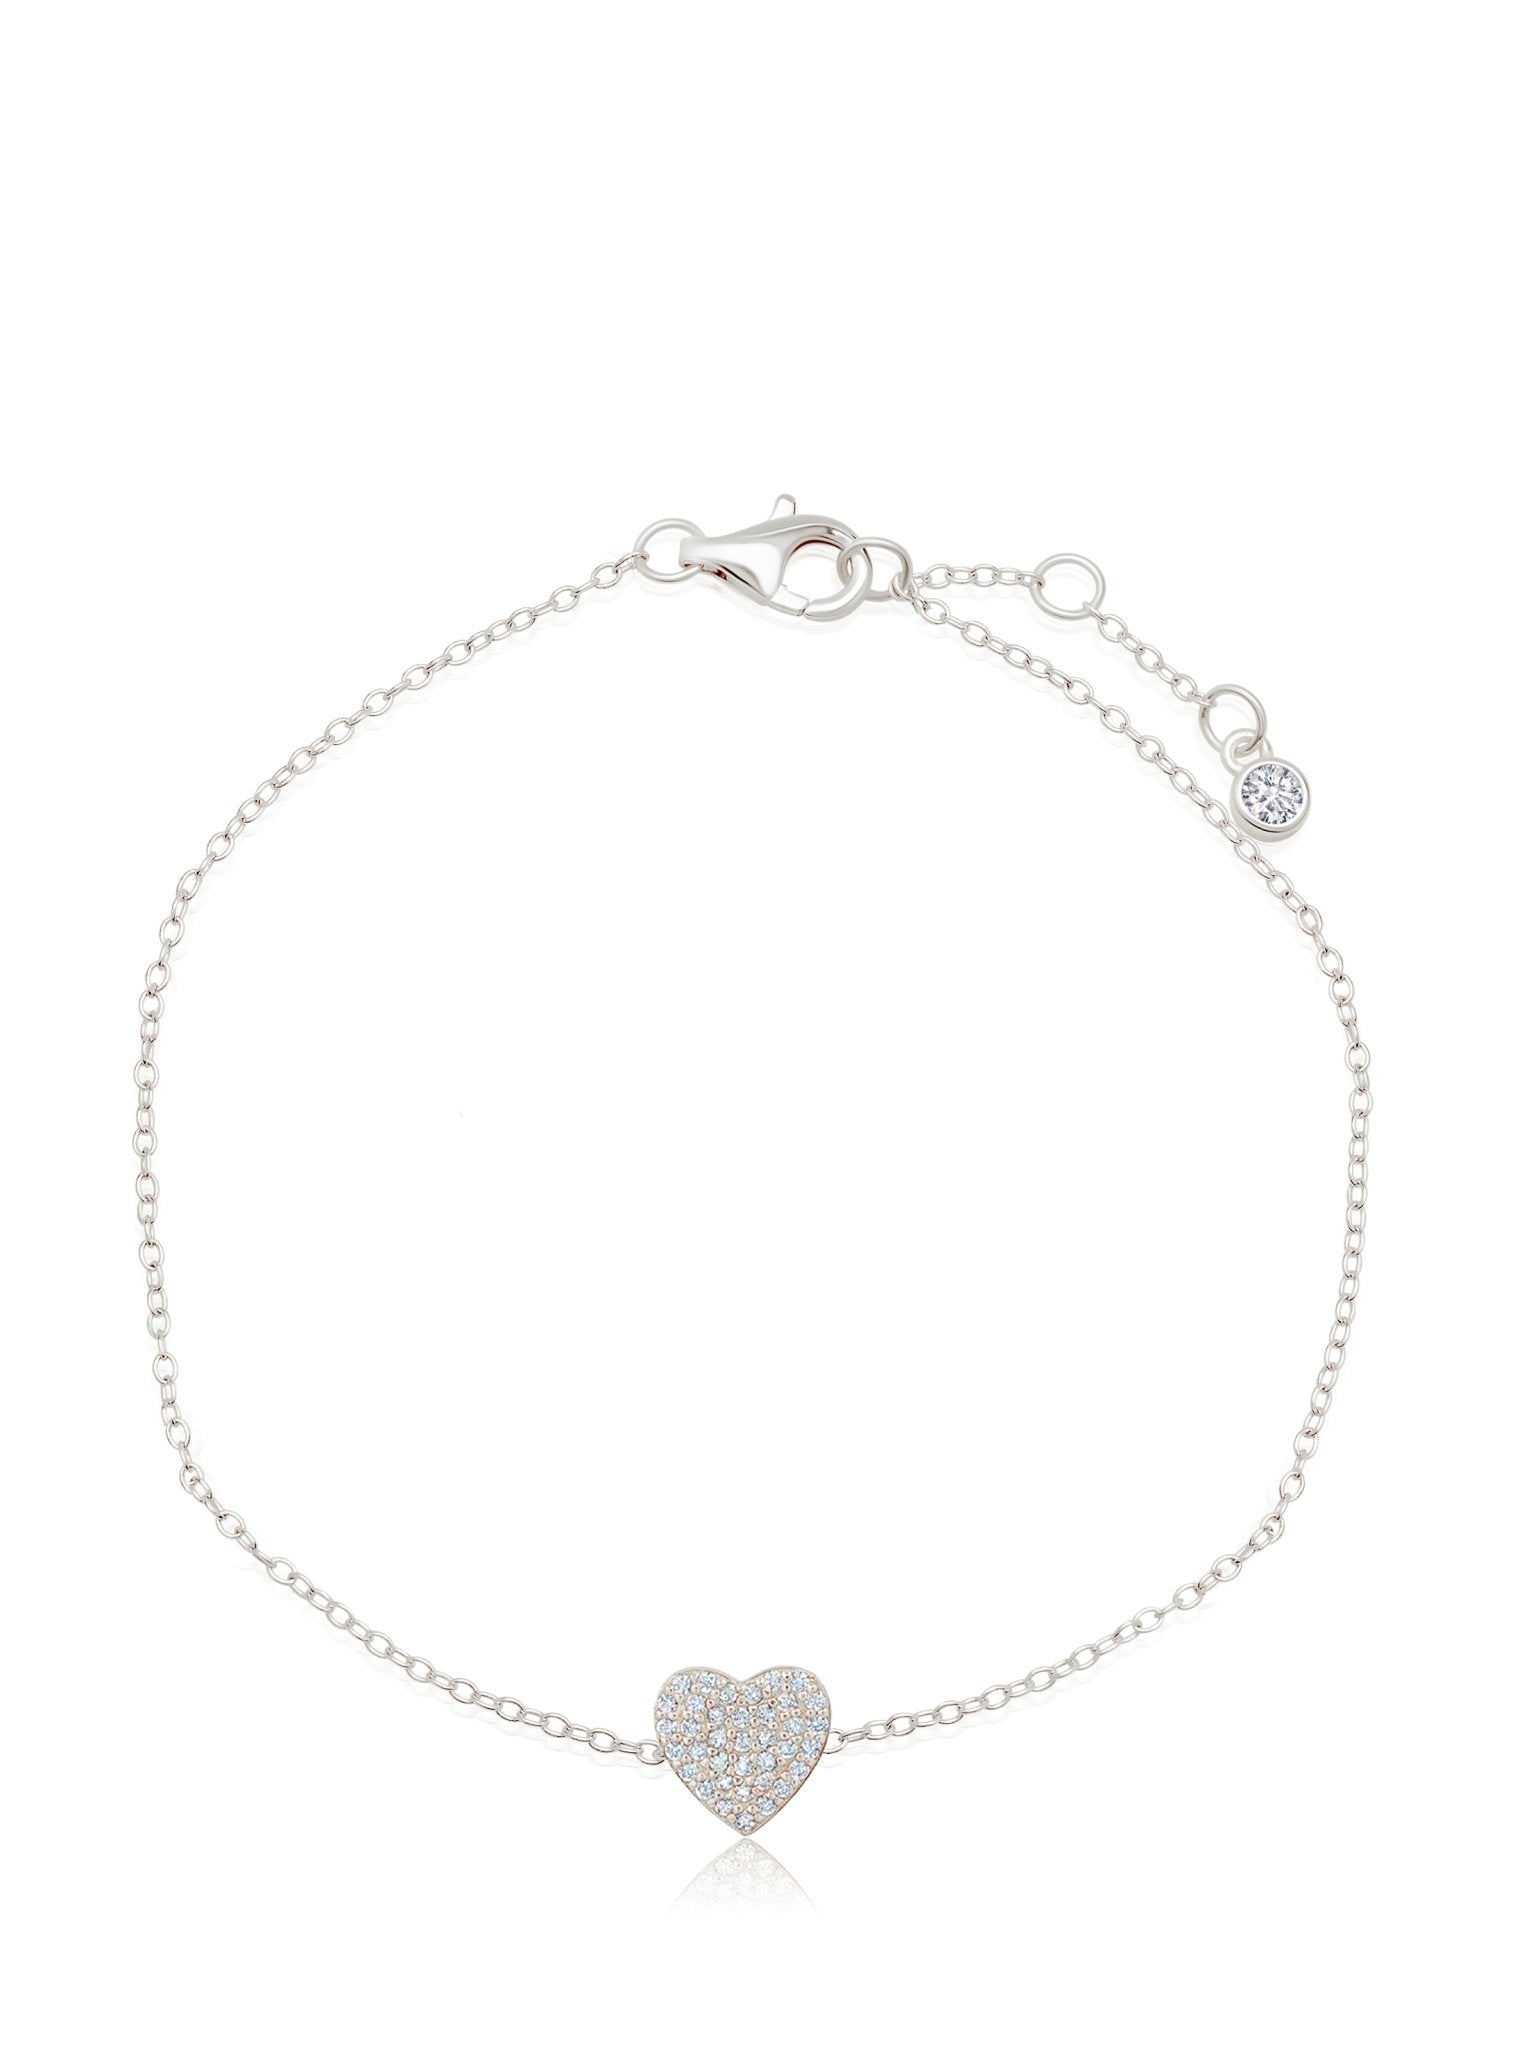 Crislu Jewelry Crislu Pave Heart Bracelet Finished in Pure Platinum